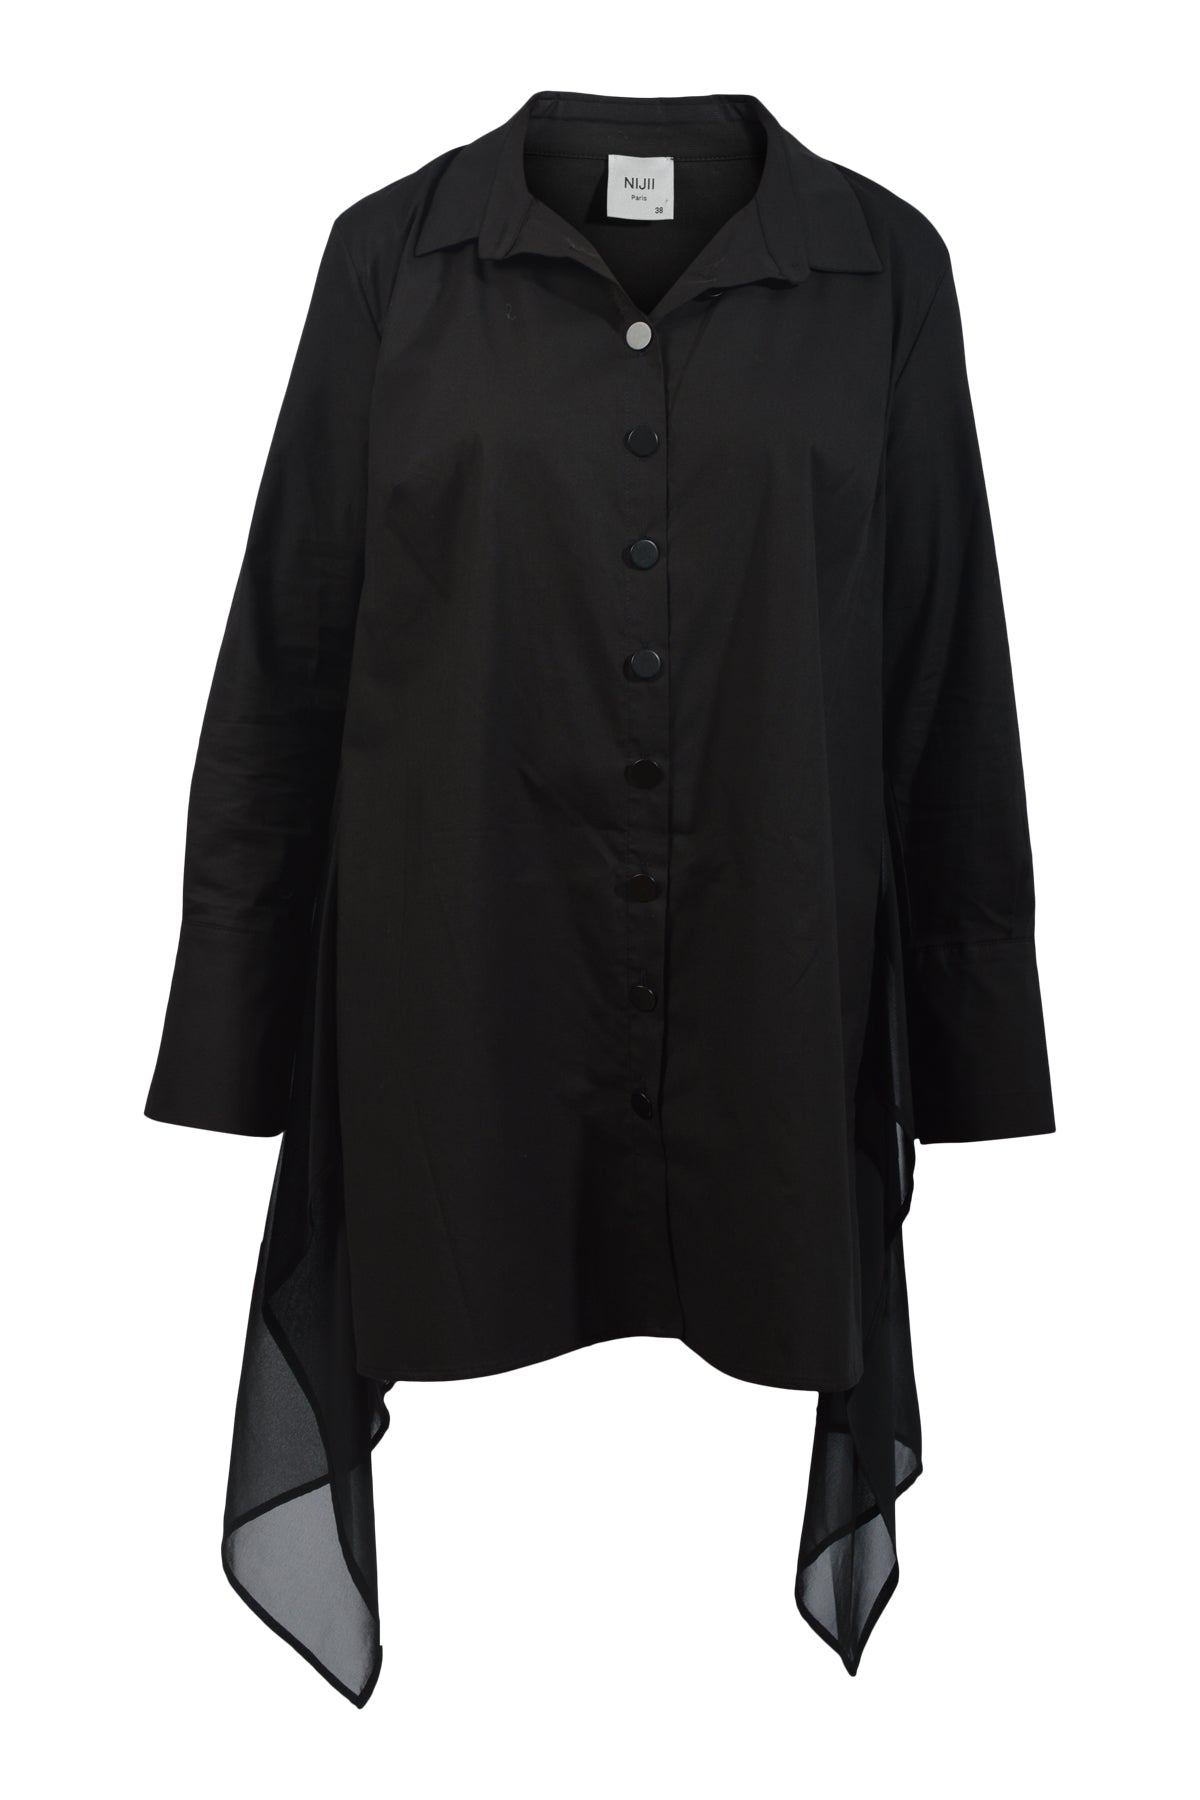 Nijii Paris Shirt 34045, Black